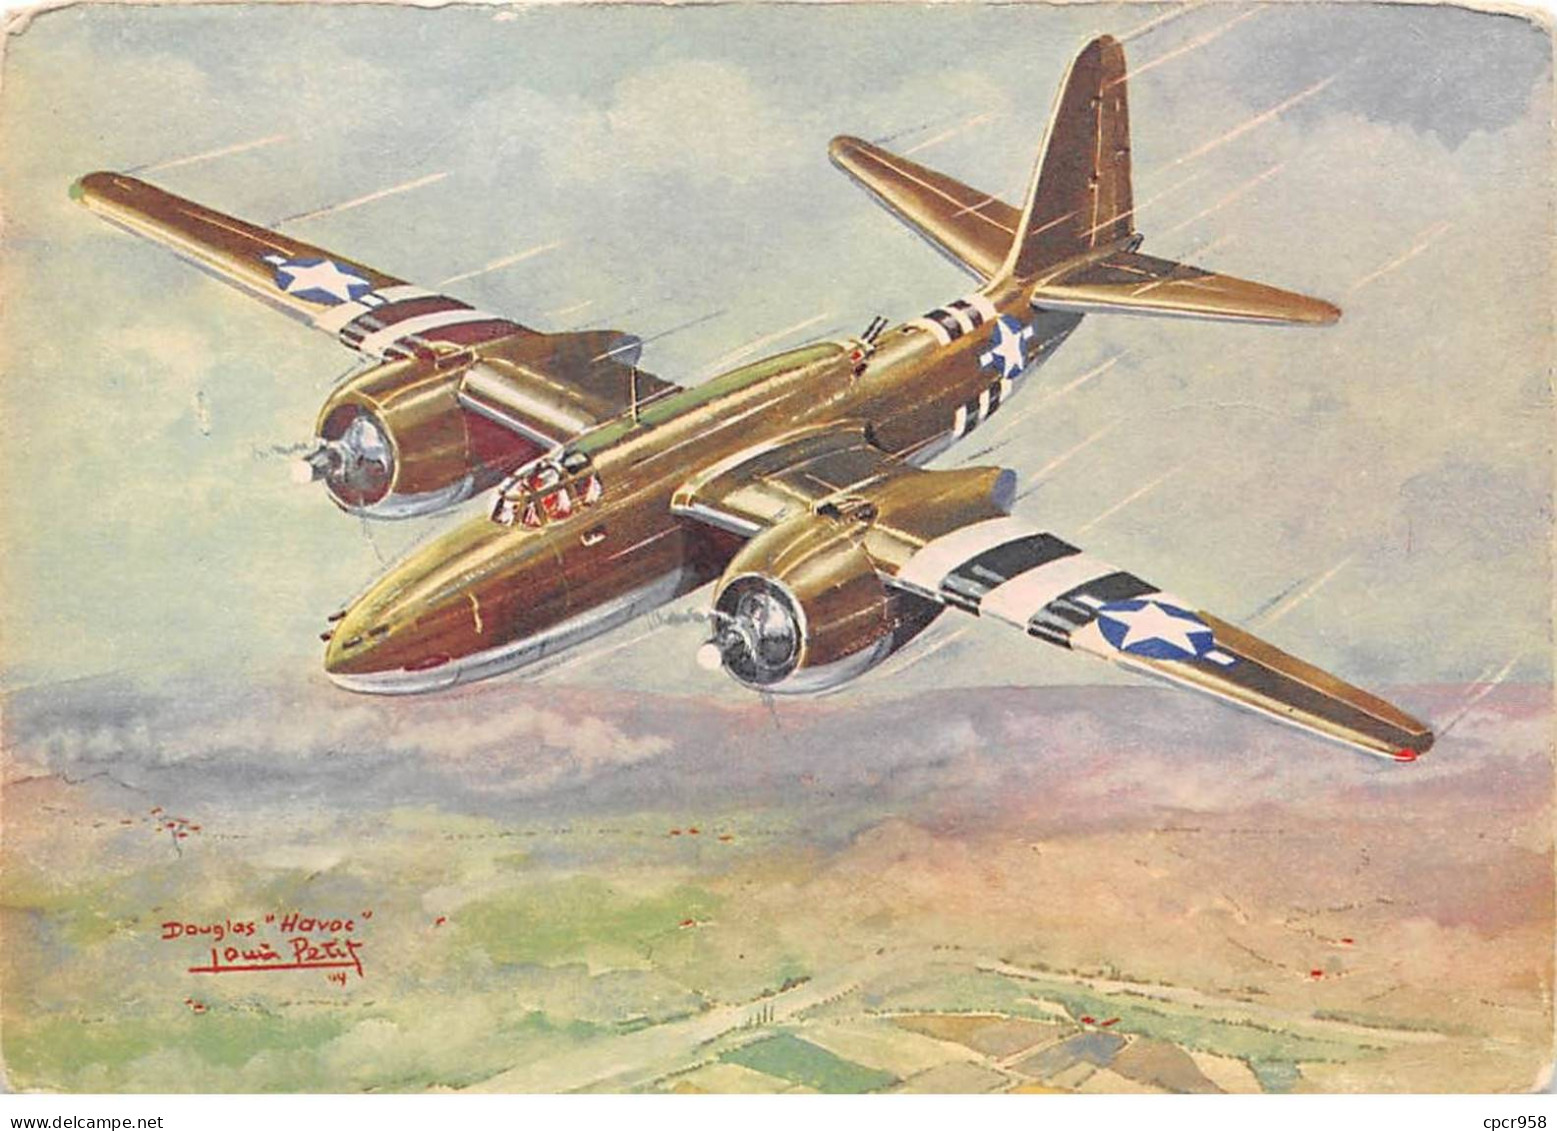 Aviation - N°81330 - Collections Des Avions Alliés (Série II) Douglas Havoc - Bombardier Moyen - Louis Petit - 1939-1945: 2. Weltkrieg